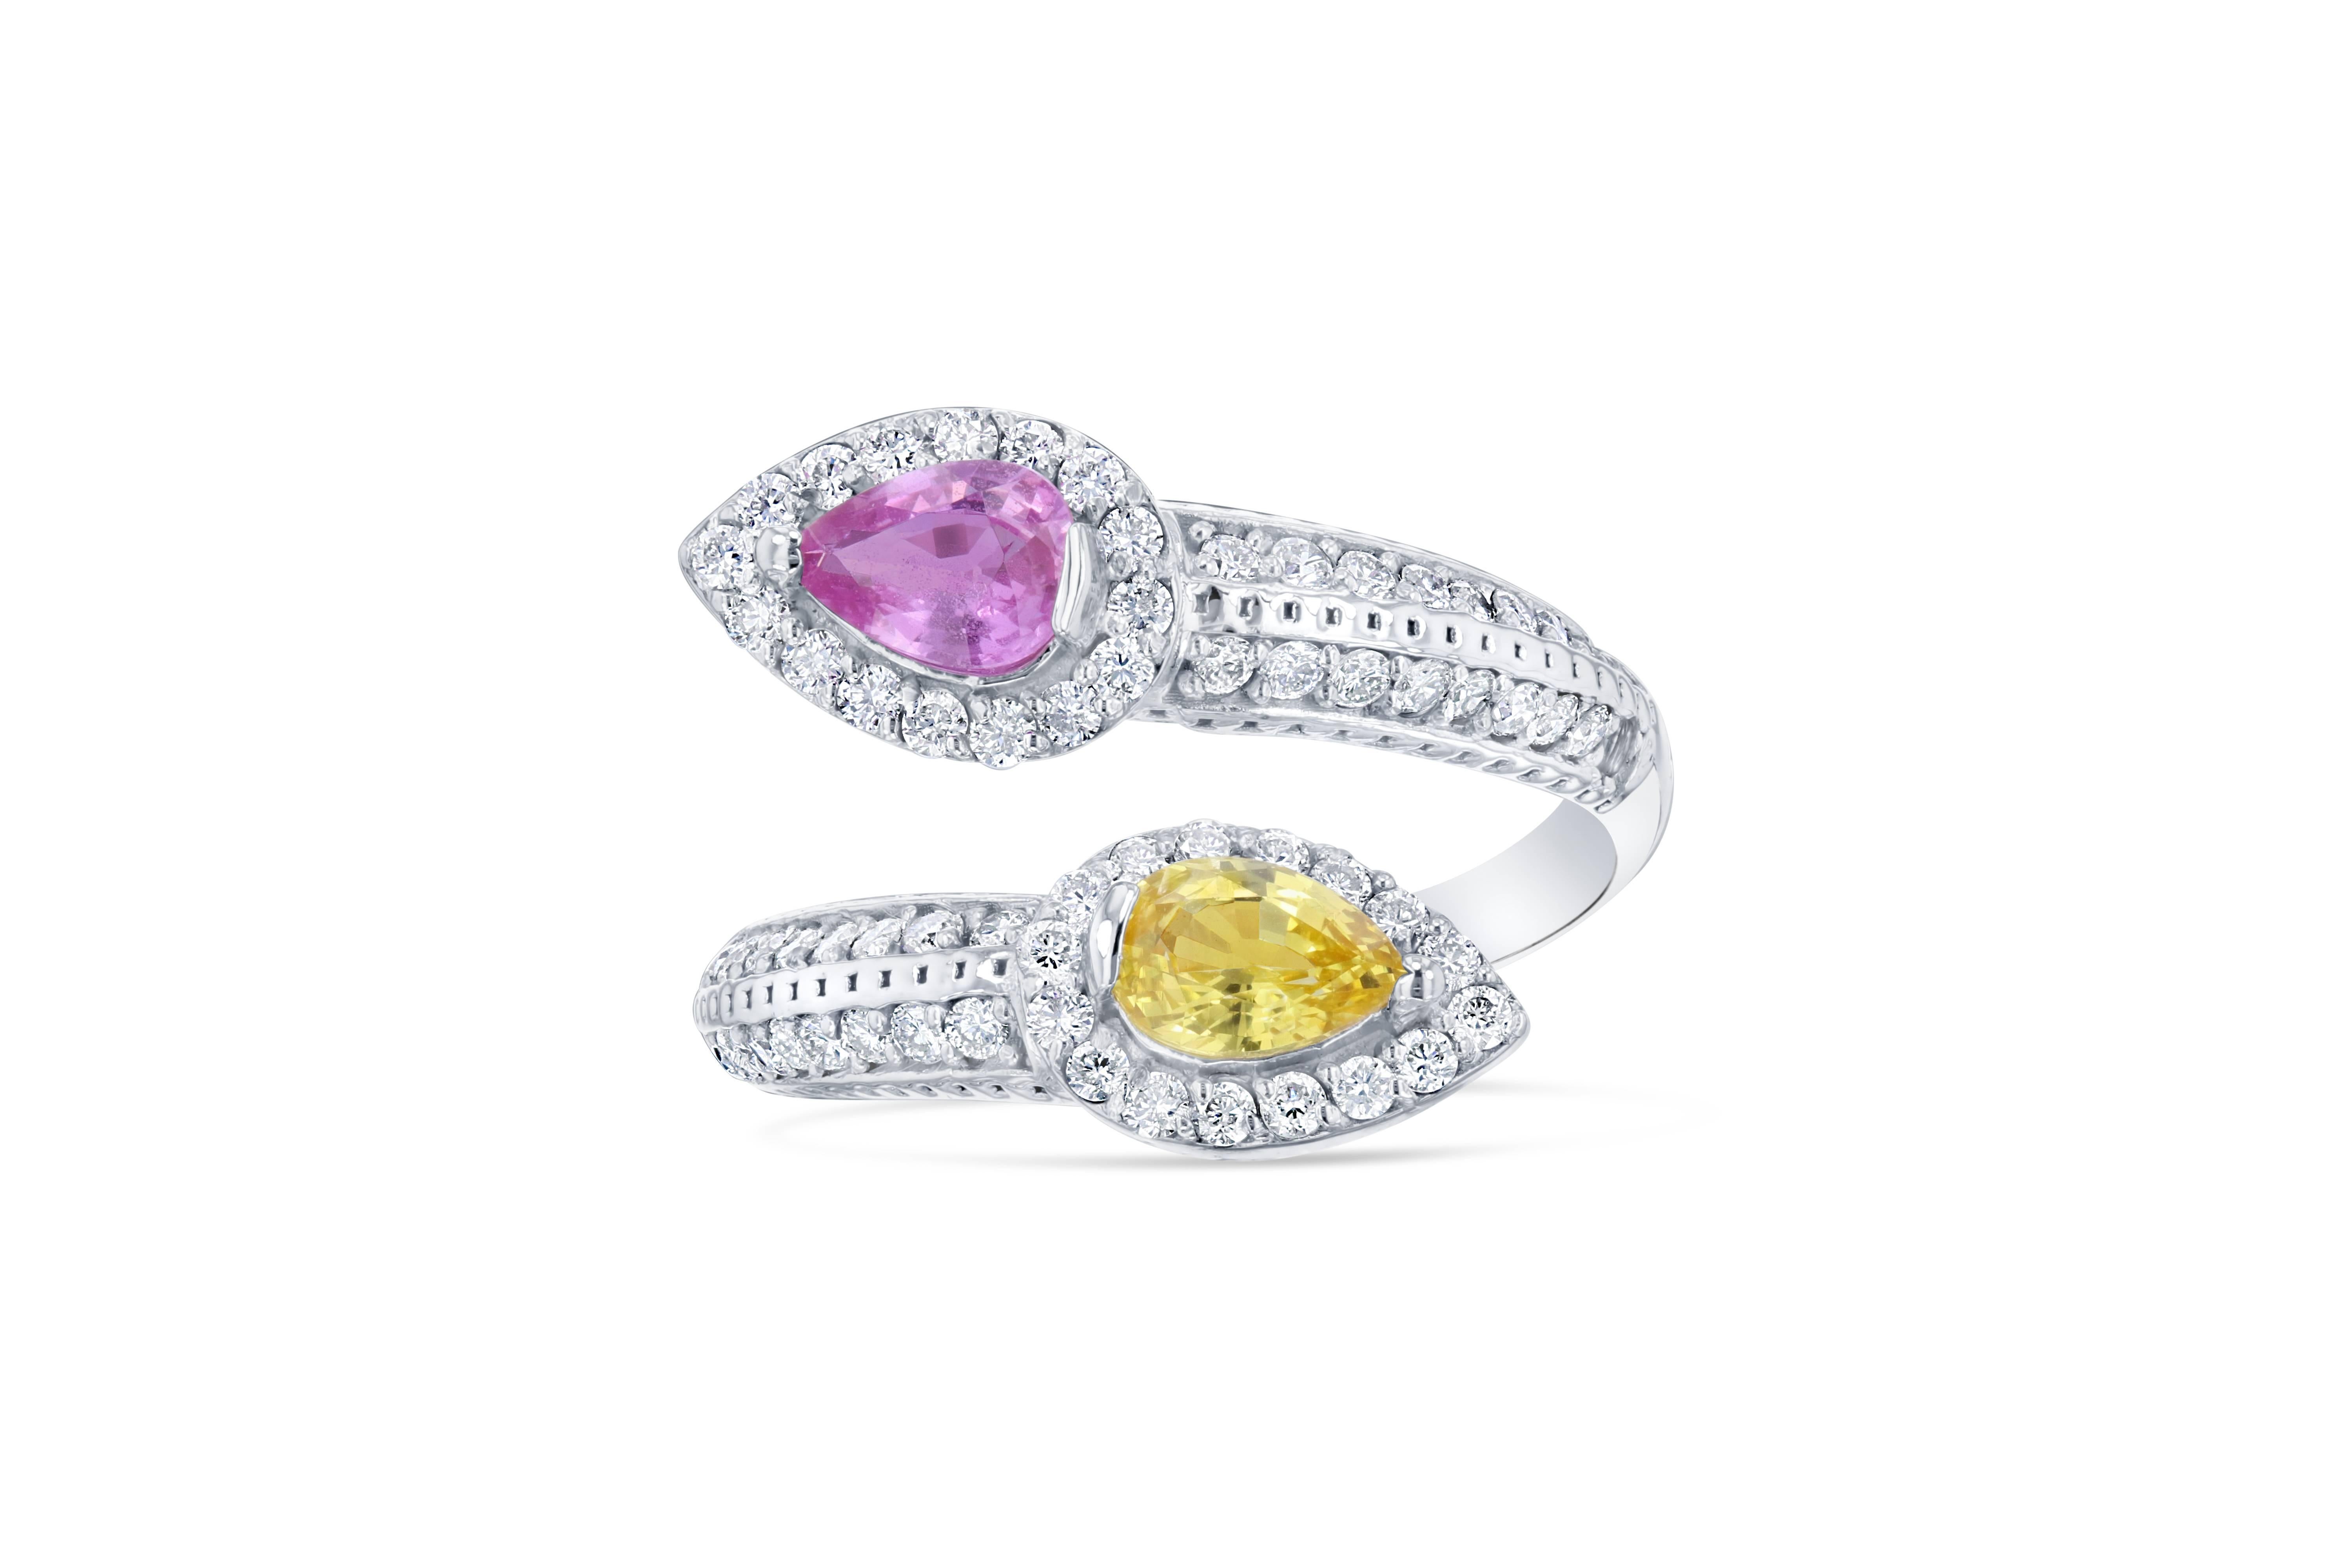 Dieser Ring hat 2 gelbe und rosa Saphire im Birnenschliff mit einem Gesamtgewicht von  0.96 Karat.  Der Ring ist umgeben von 68 Diamanten im Rundschliff mit einem Gewicht von 0,60 Karat. Die Saphire sind naturbelassen und wurden gemäß den